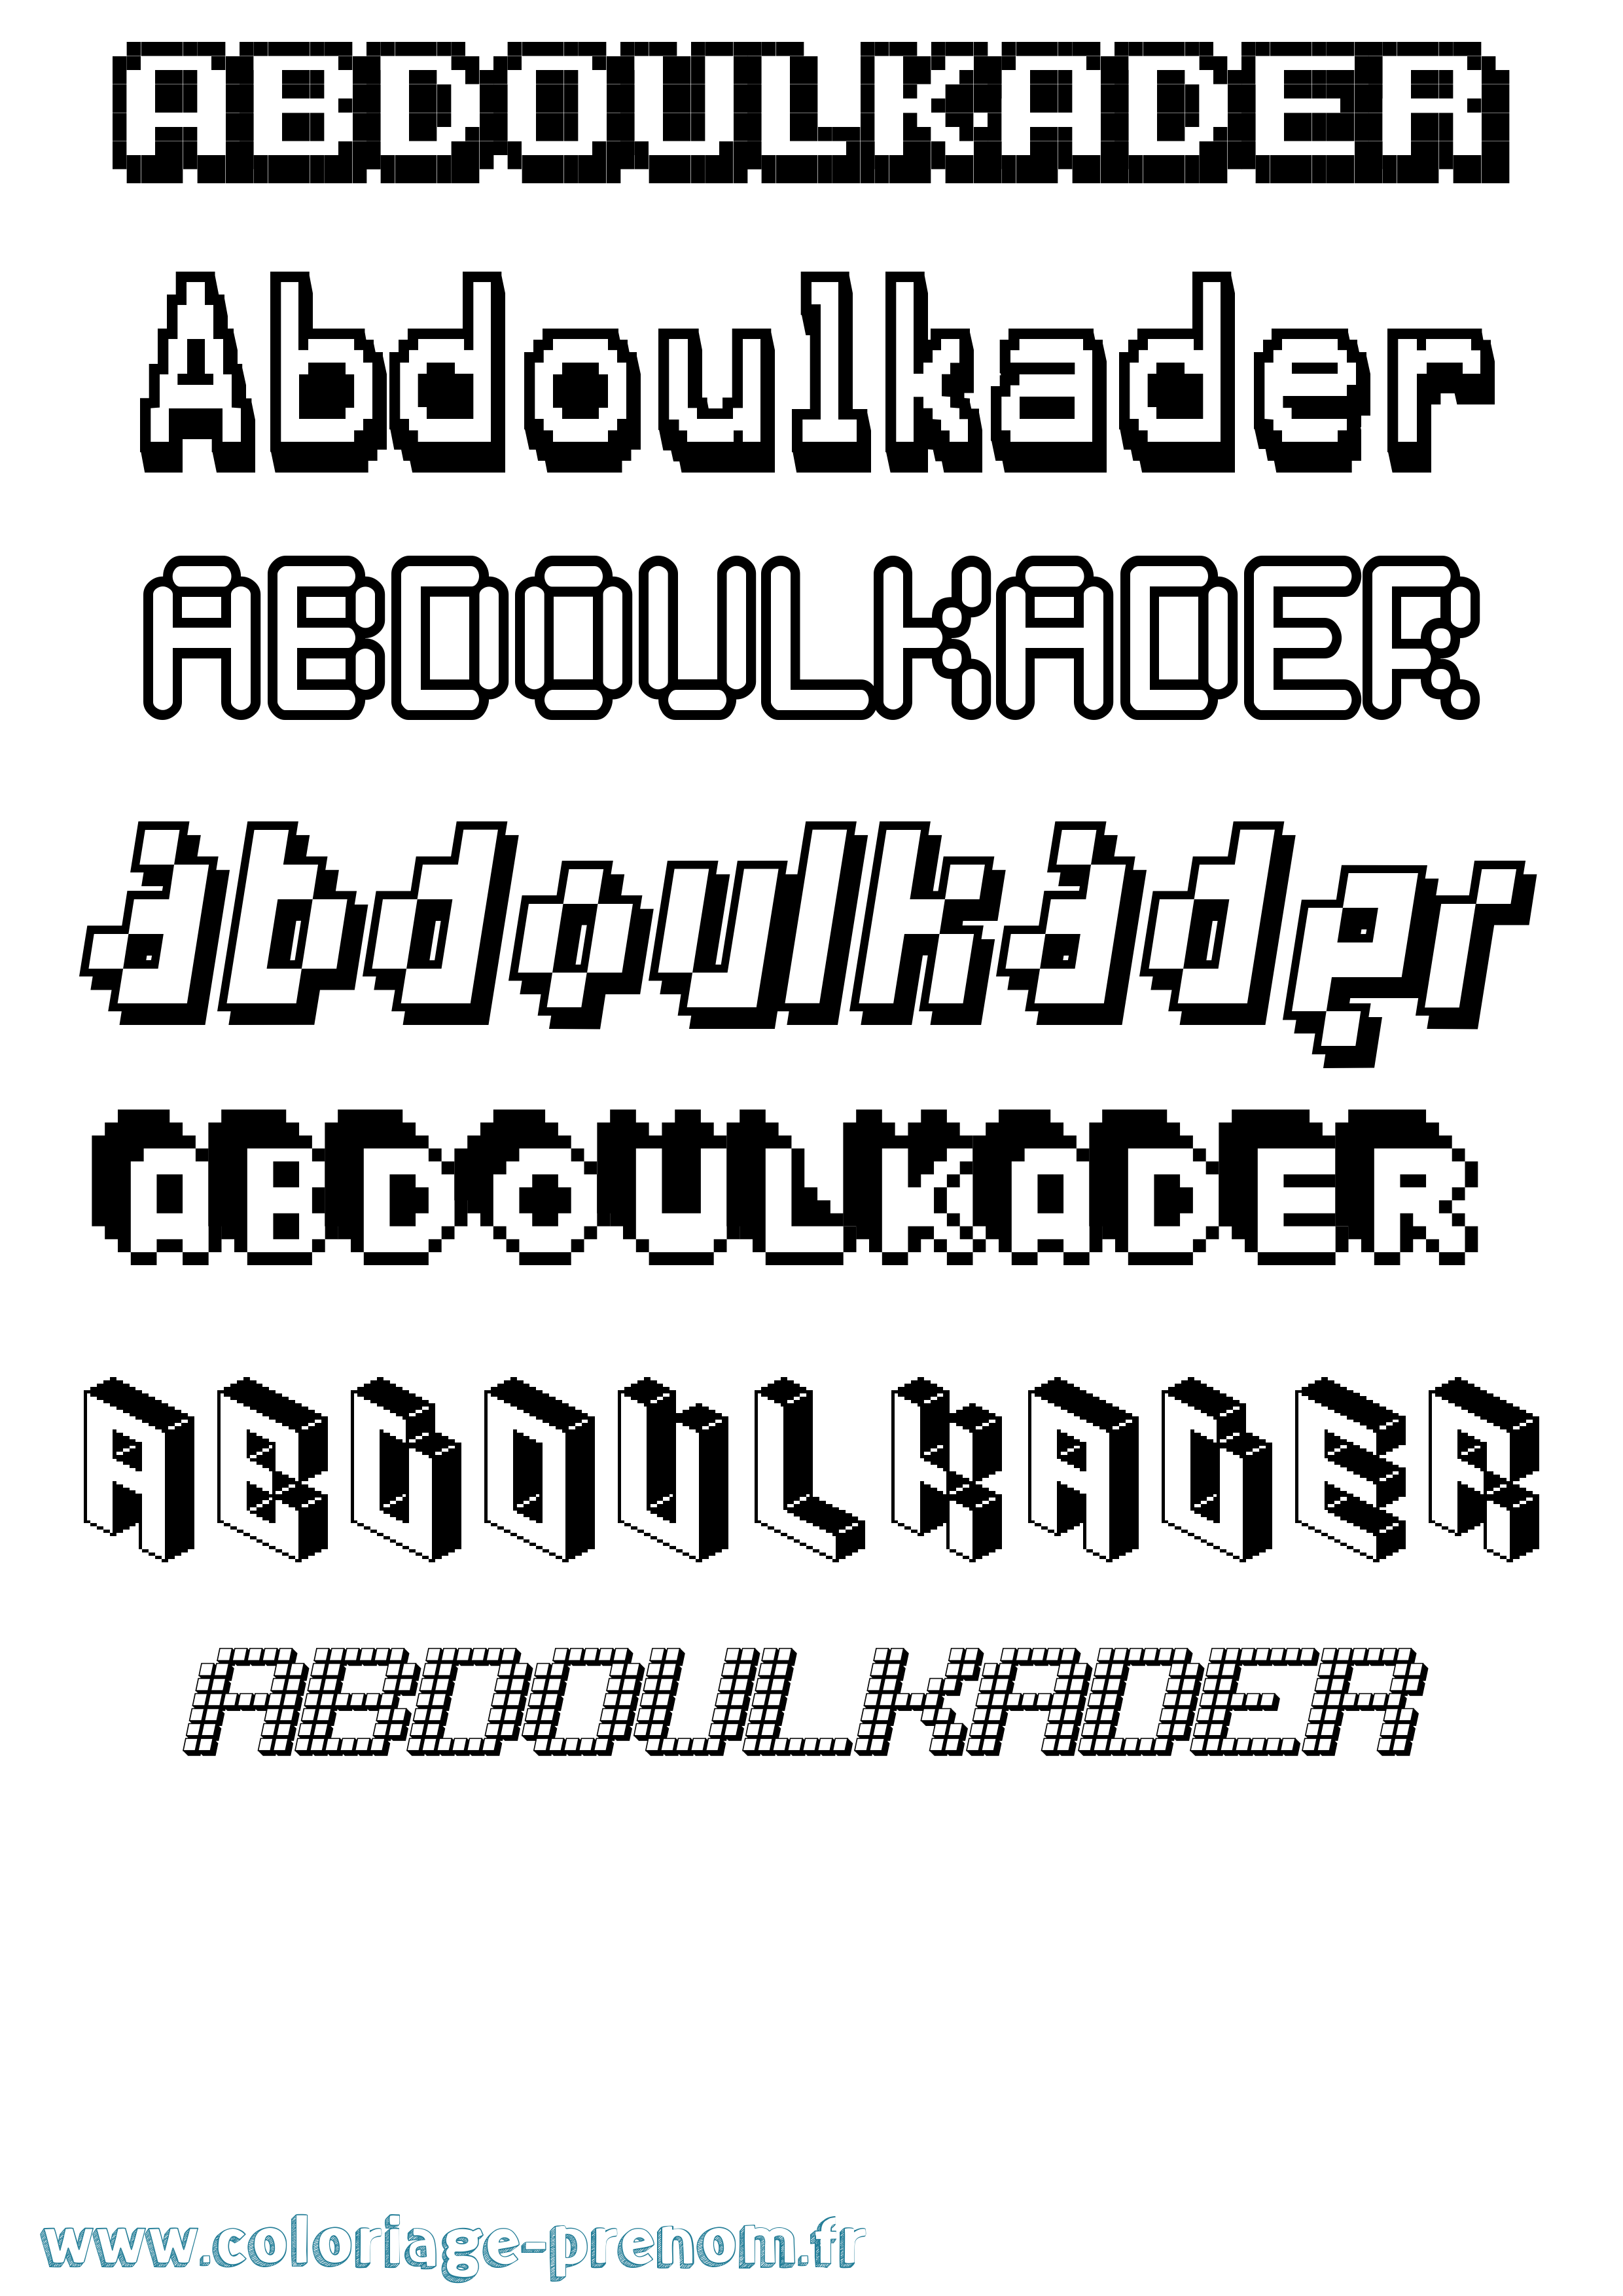 Coloriage prénom Abdoulkader Pixel